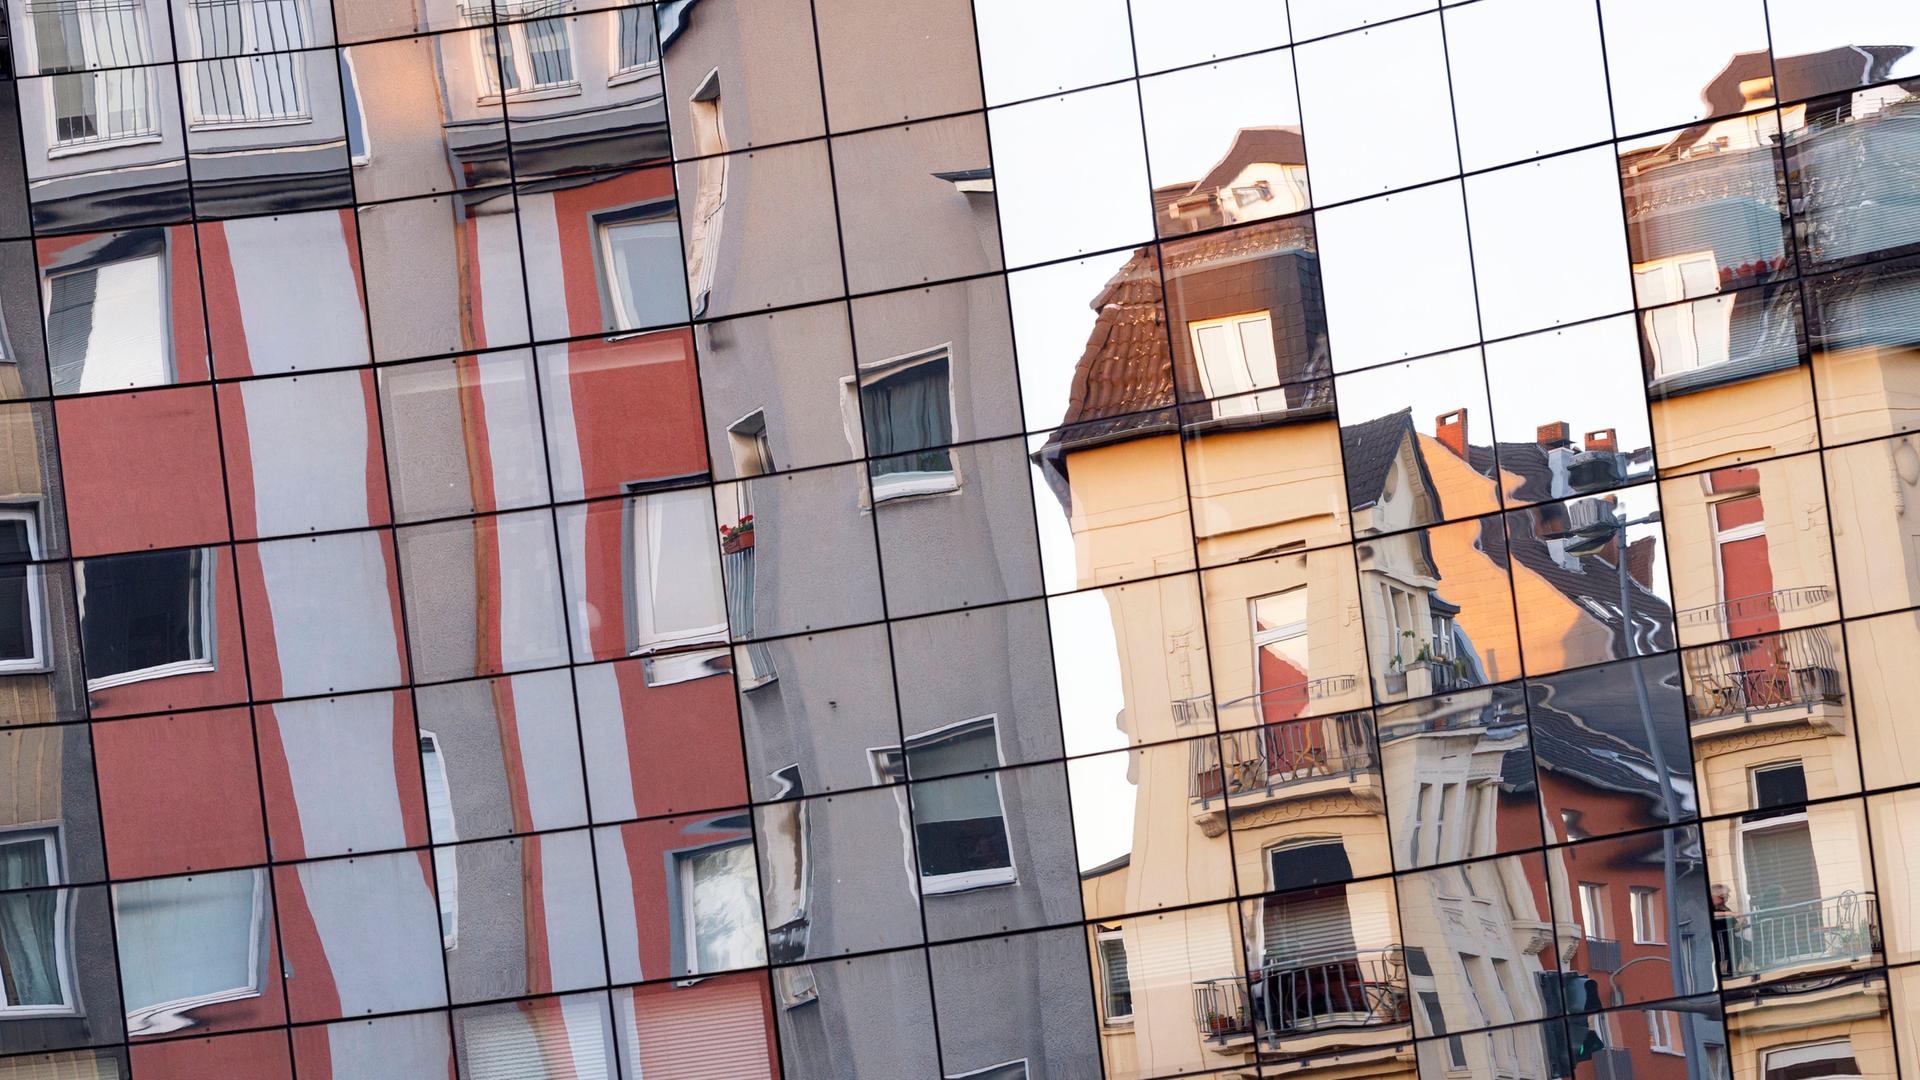 Unterschiedliche Wohnhäuser in der Kölner Innenstadt spiegeln sich in einer gegenüberliegenden Glasfassade